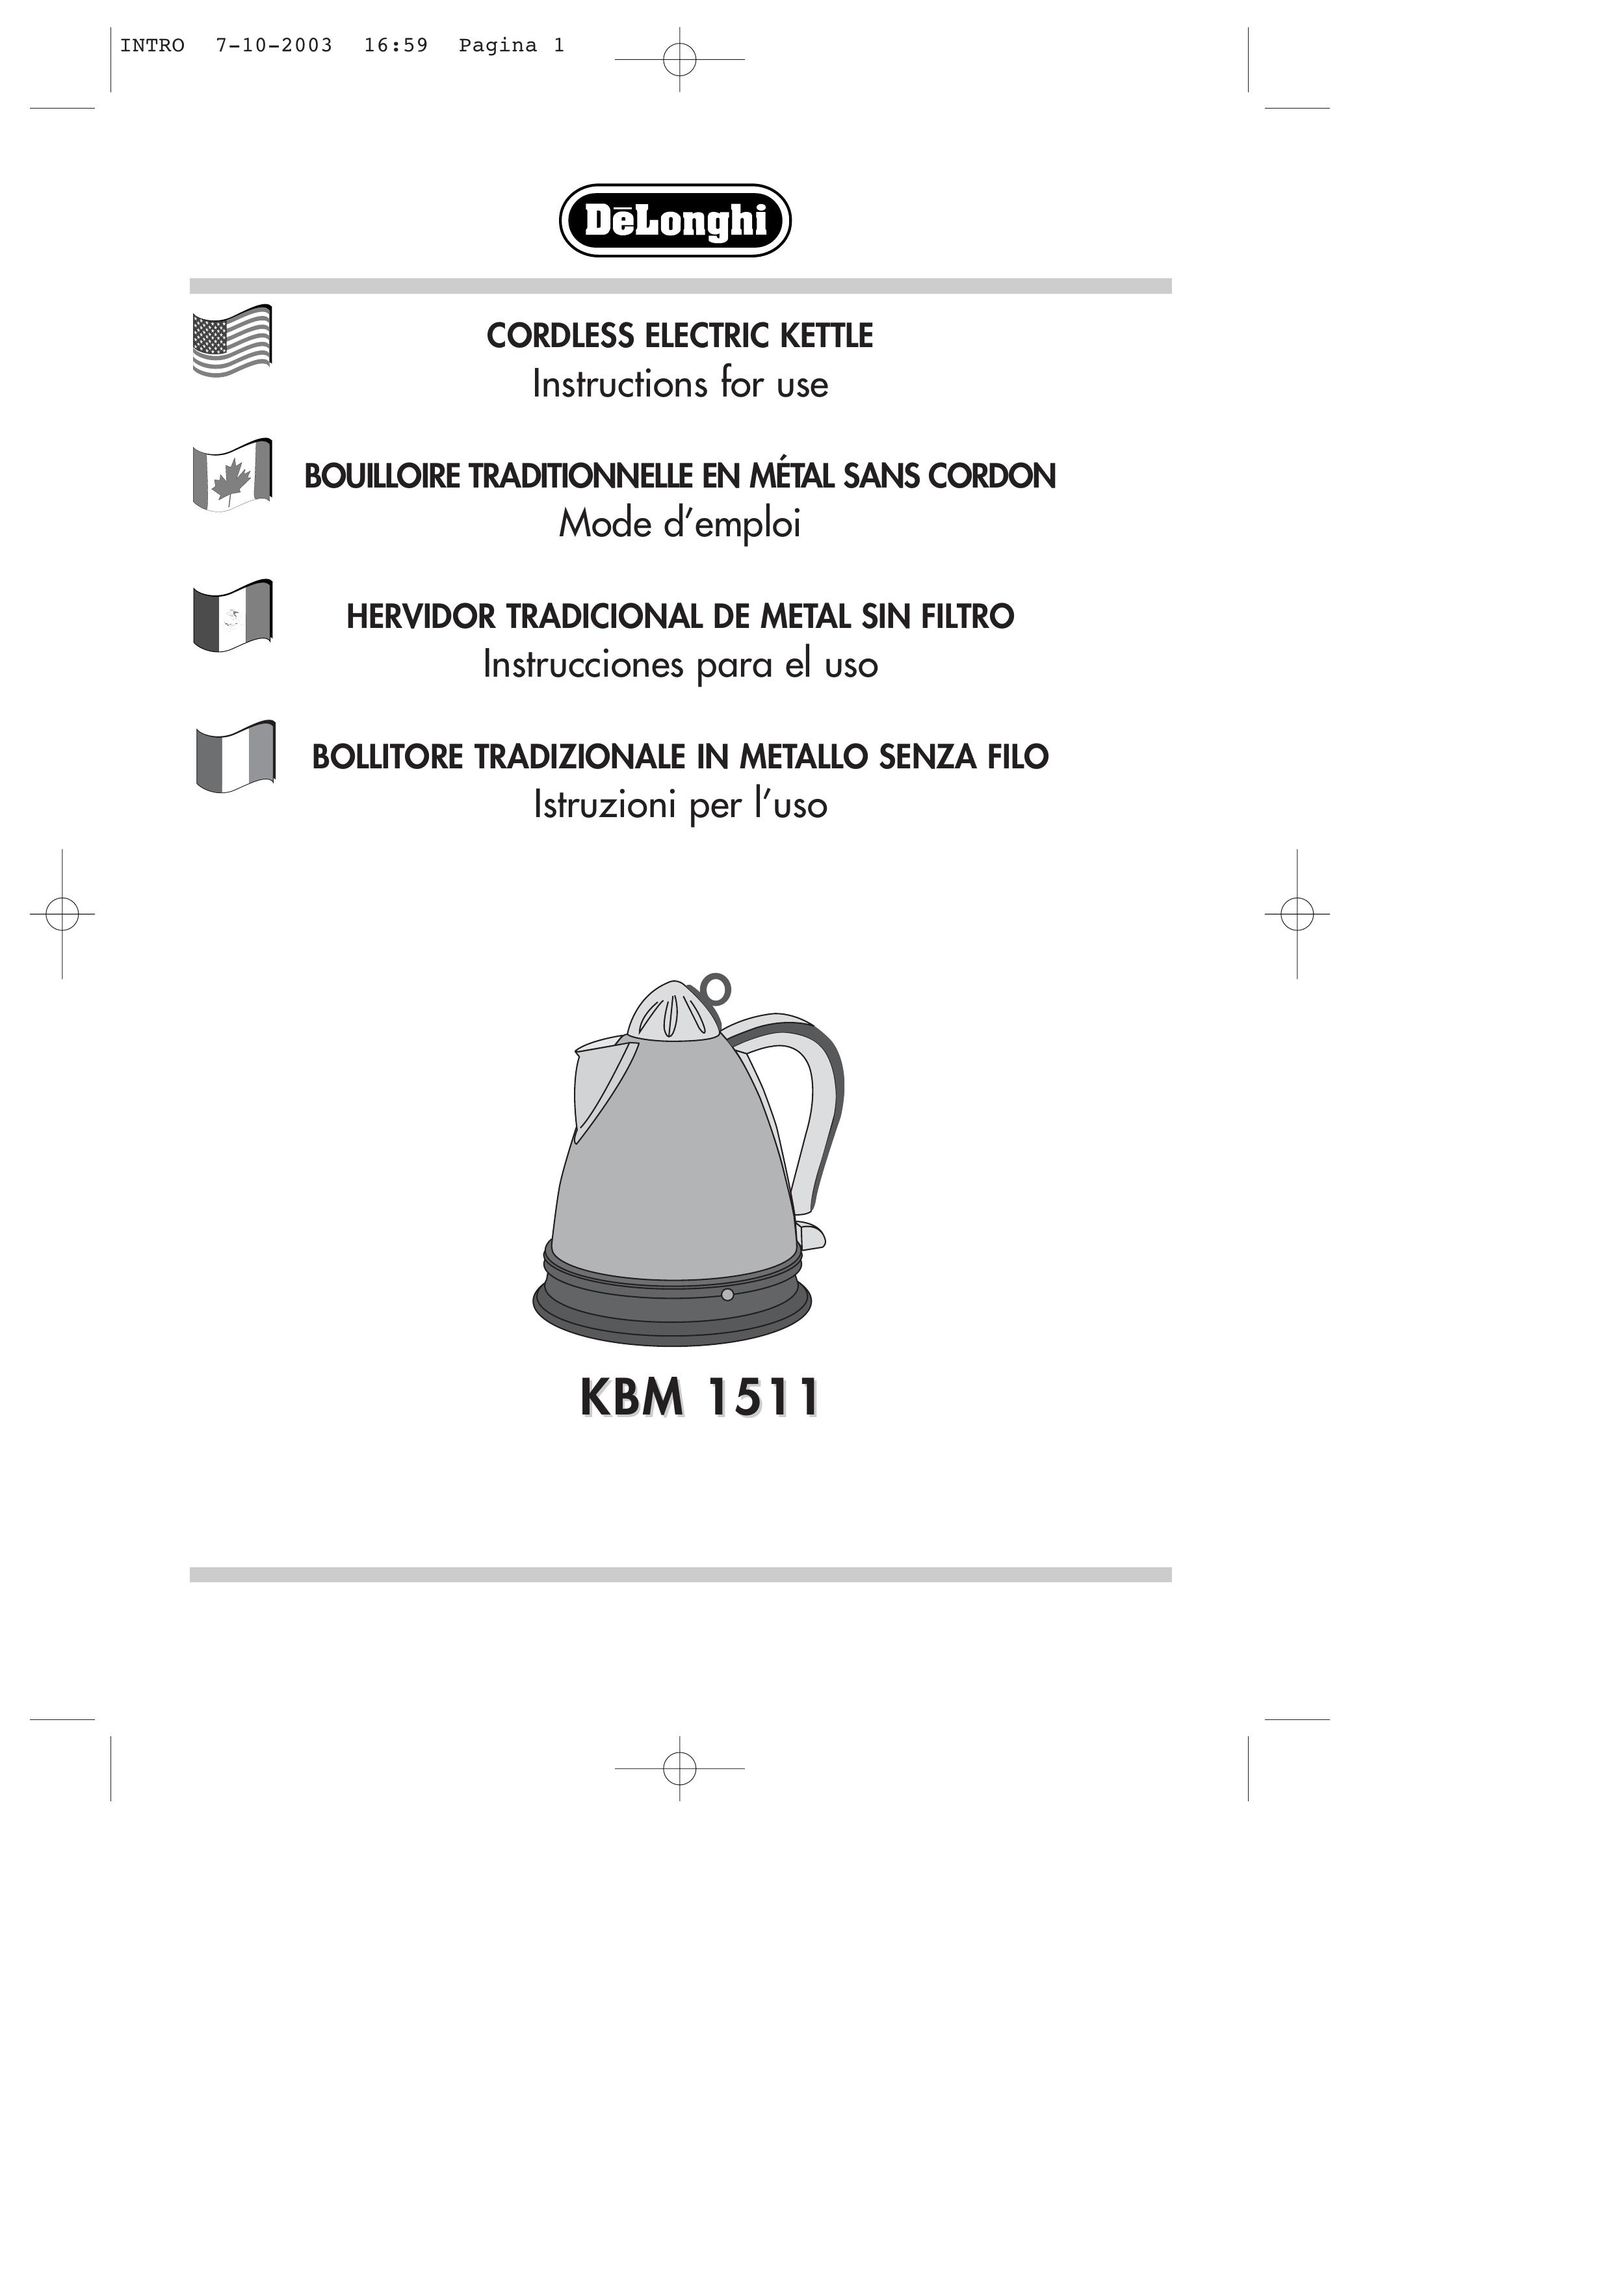 DeLonghi KBM 1511 Hot Beverage Maker User Manual